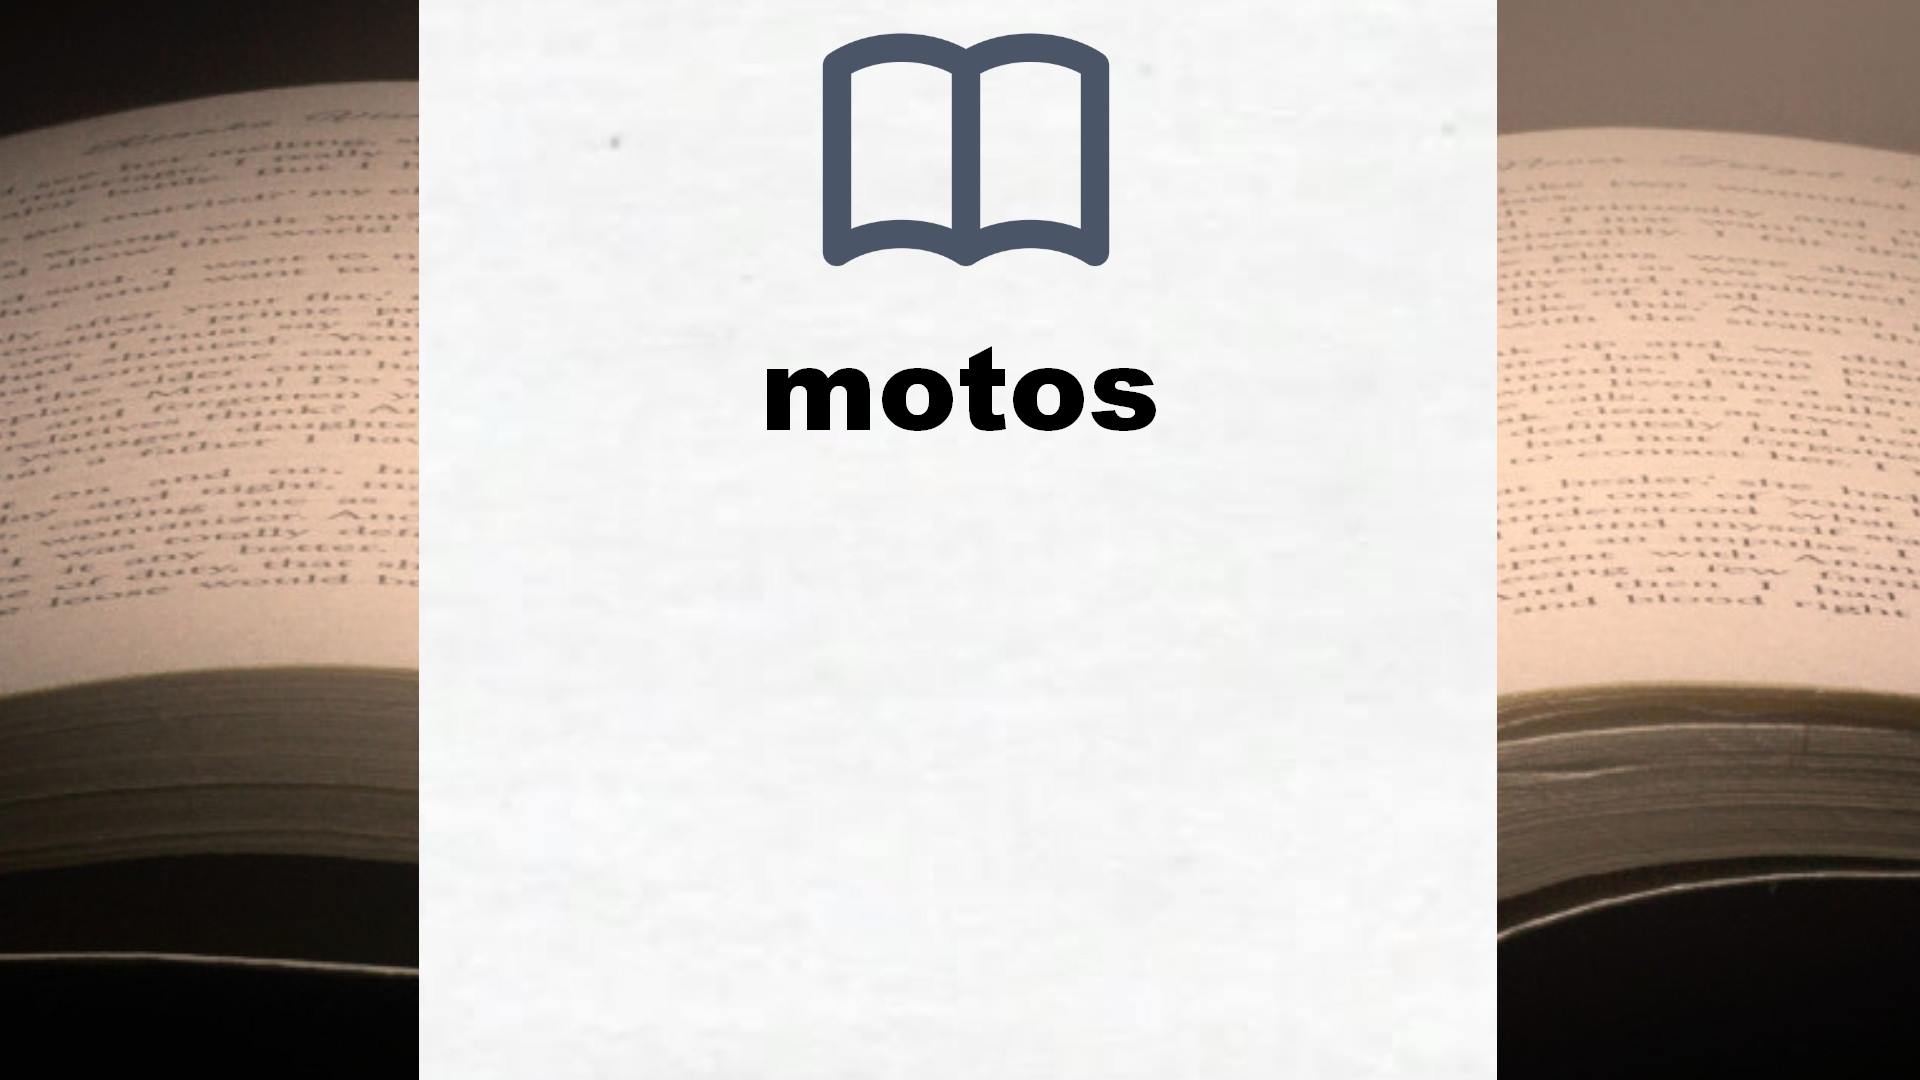 Libros sobre motos